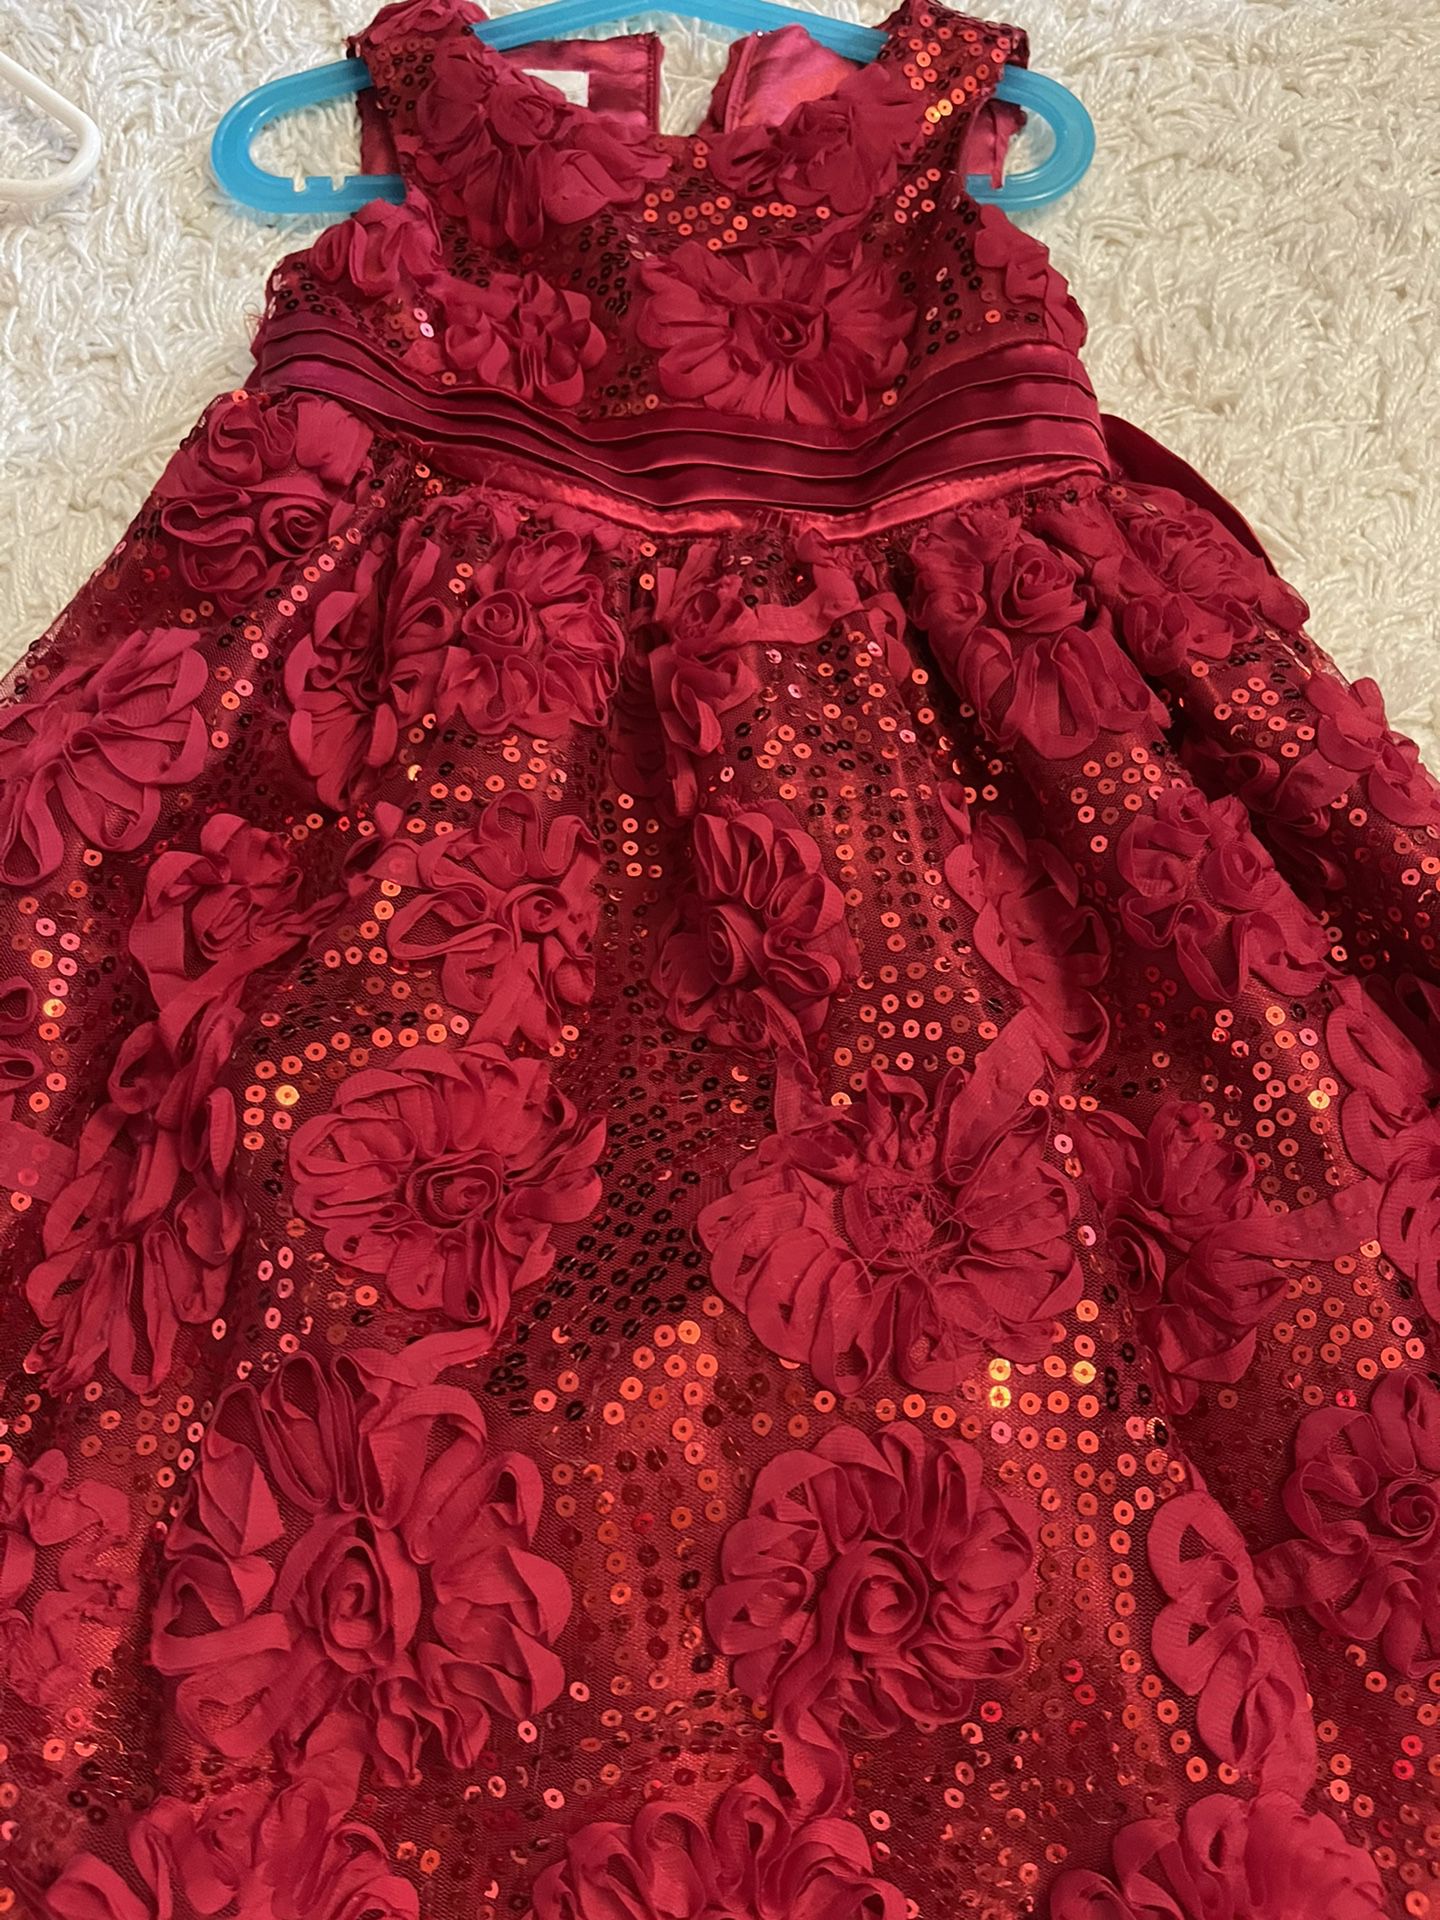 Two Beautiful Dress Size 6 